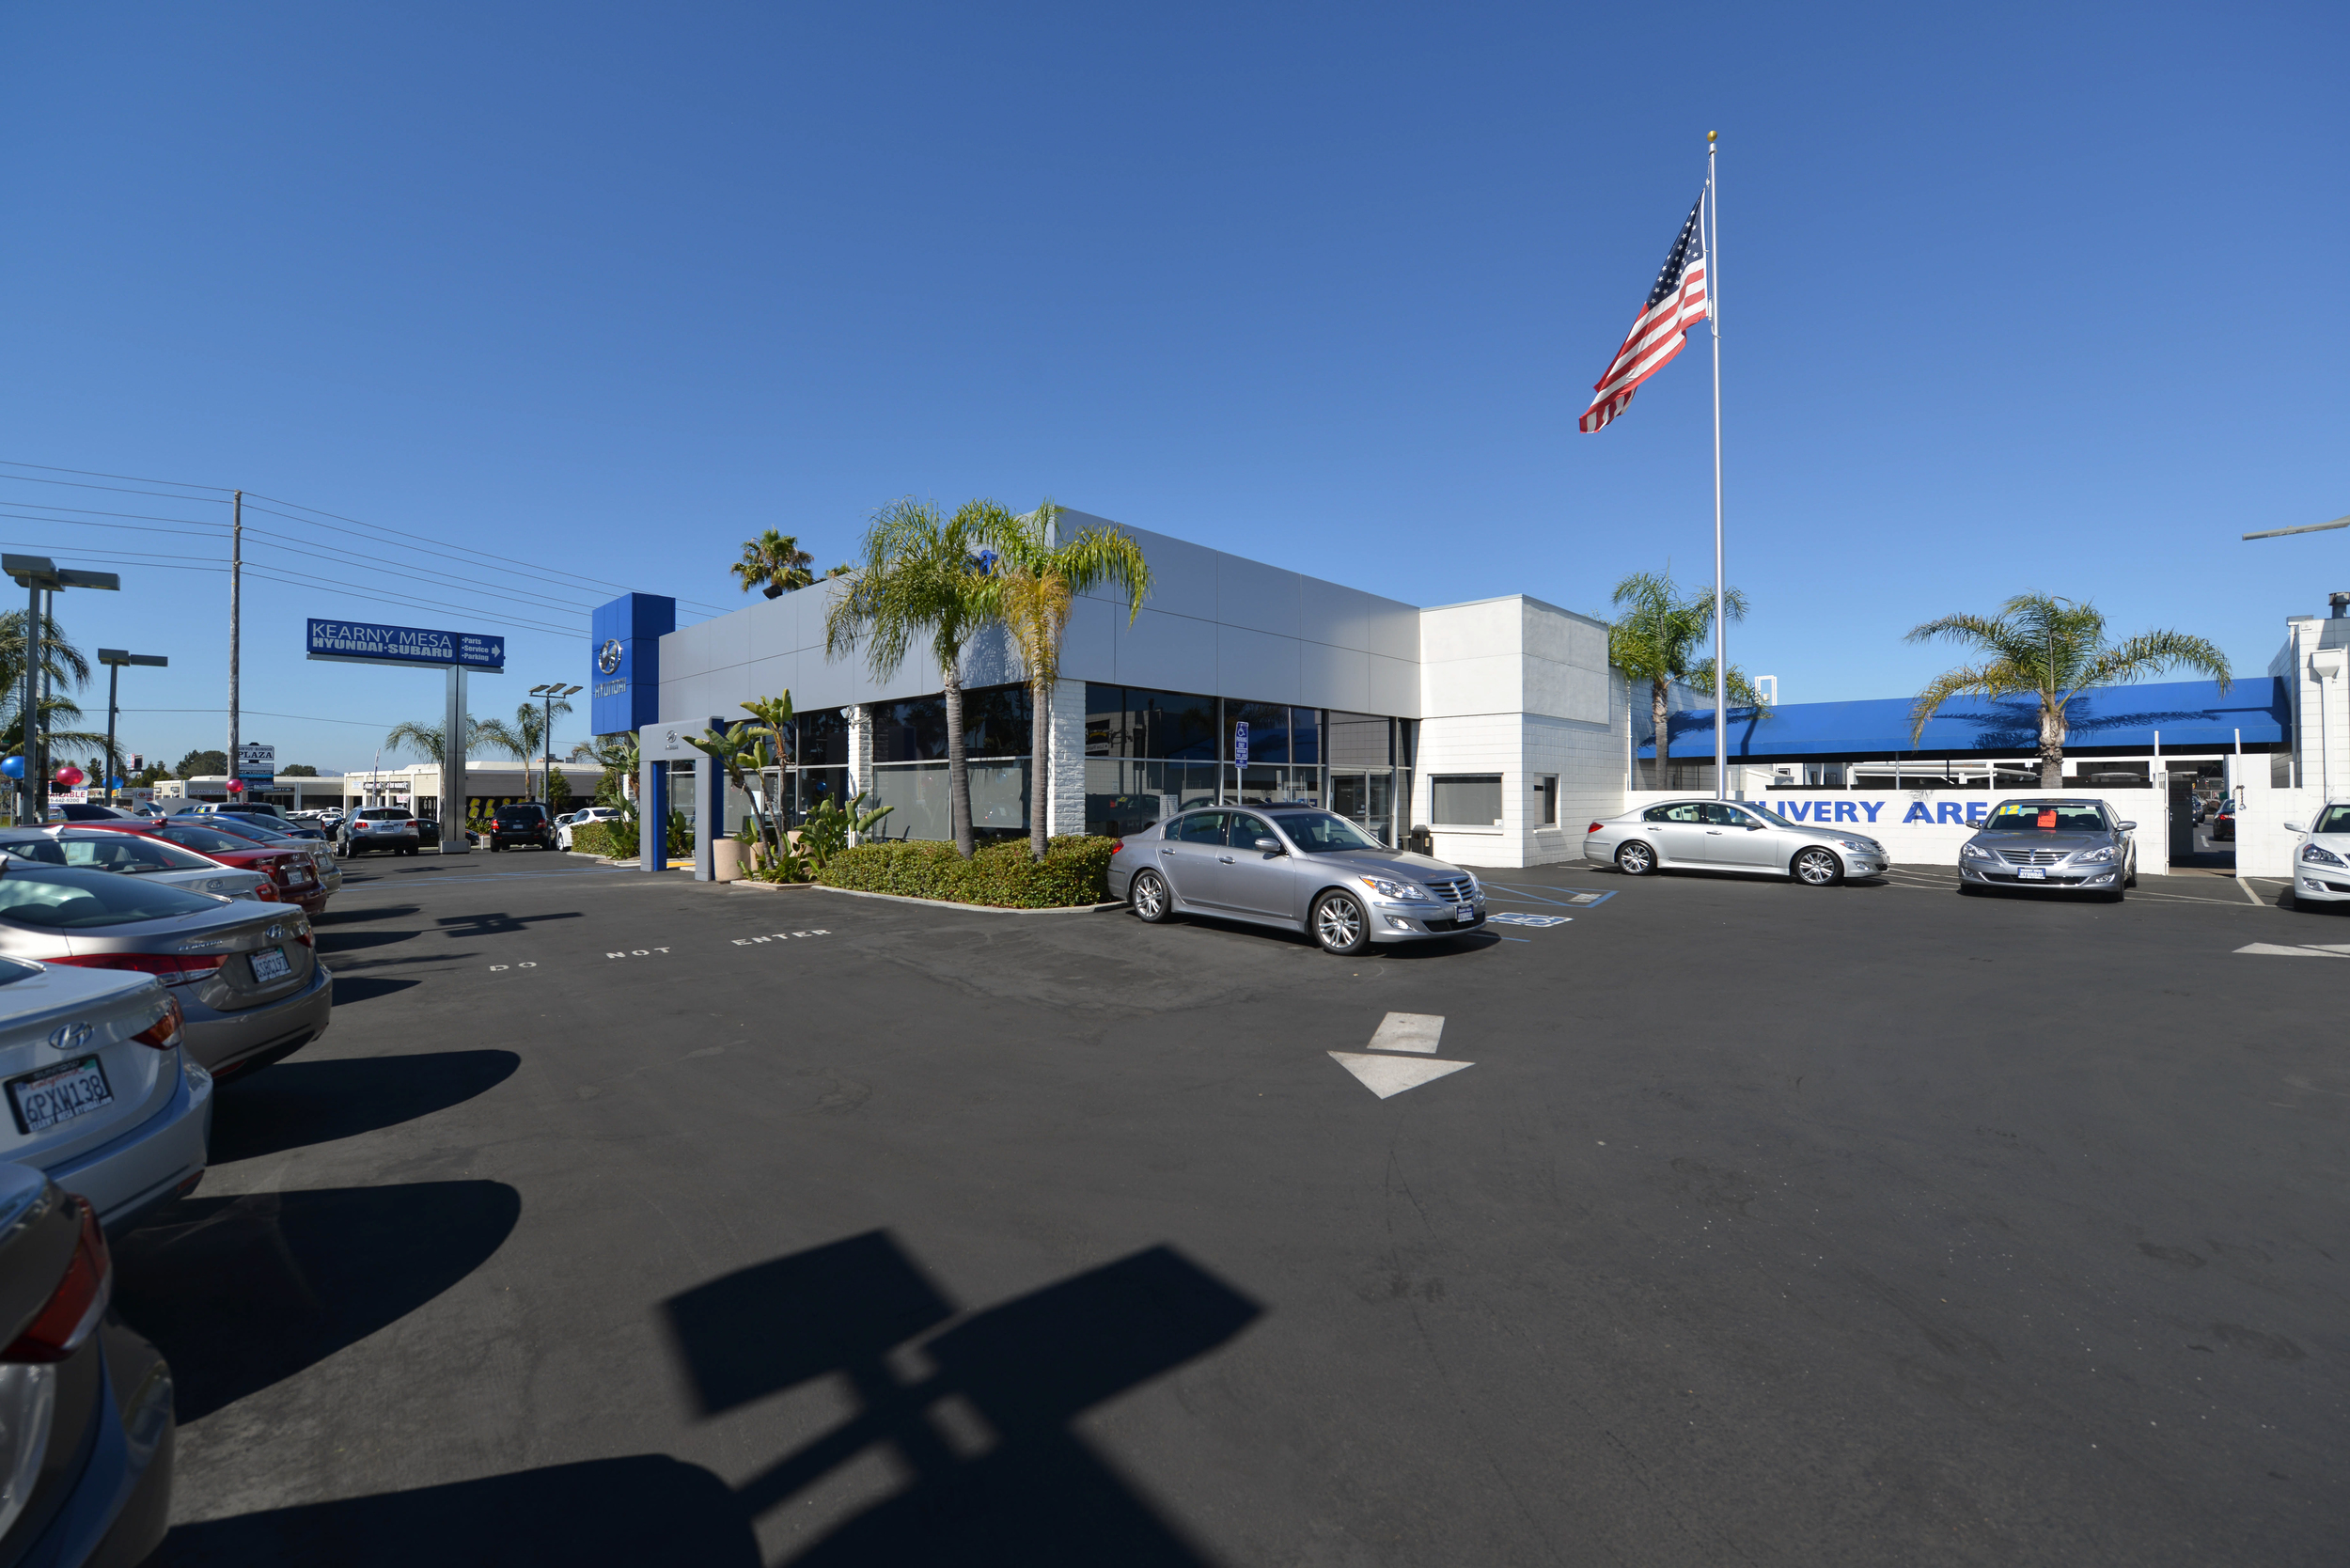 Kearny Mesa Hyundai Subaru Dealership